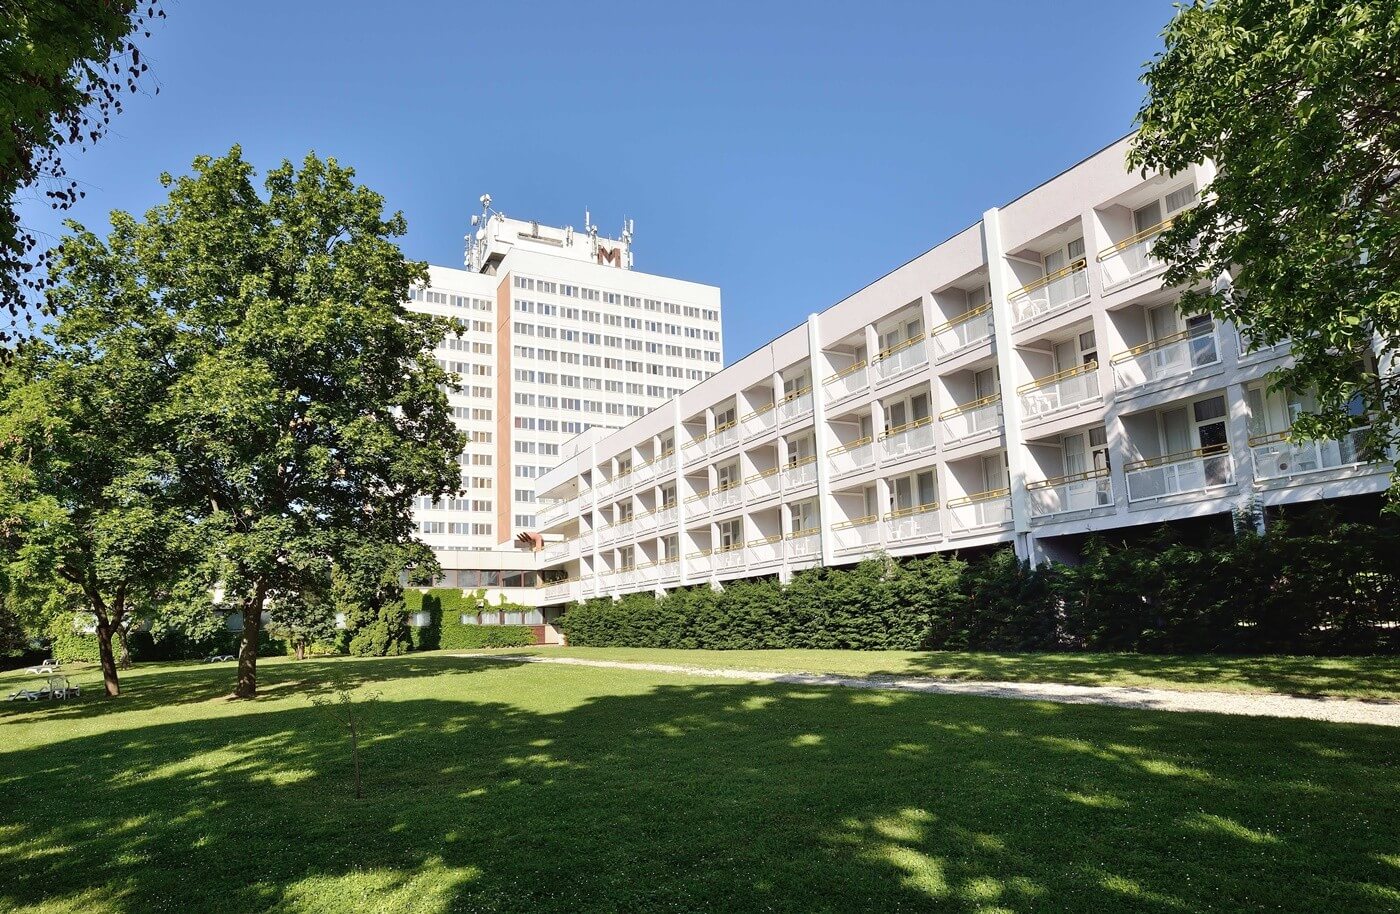 Közel 350 szoba újult meg a Danubius Hotels egyik szállodájában